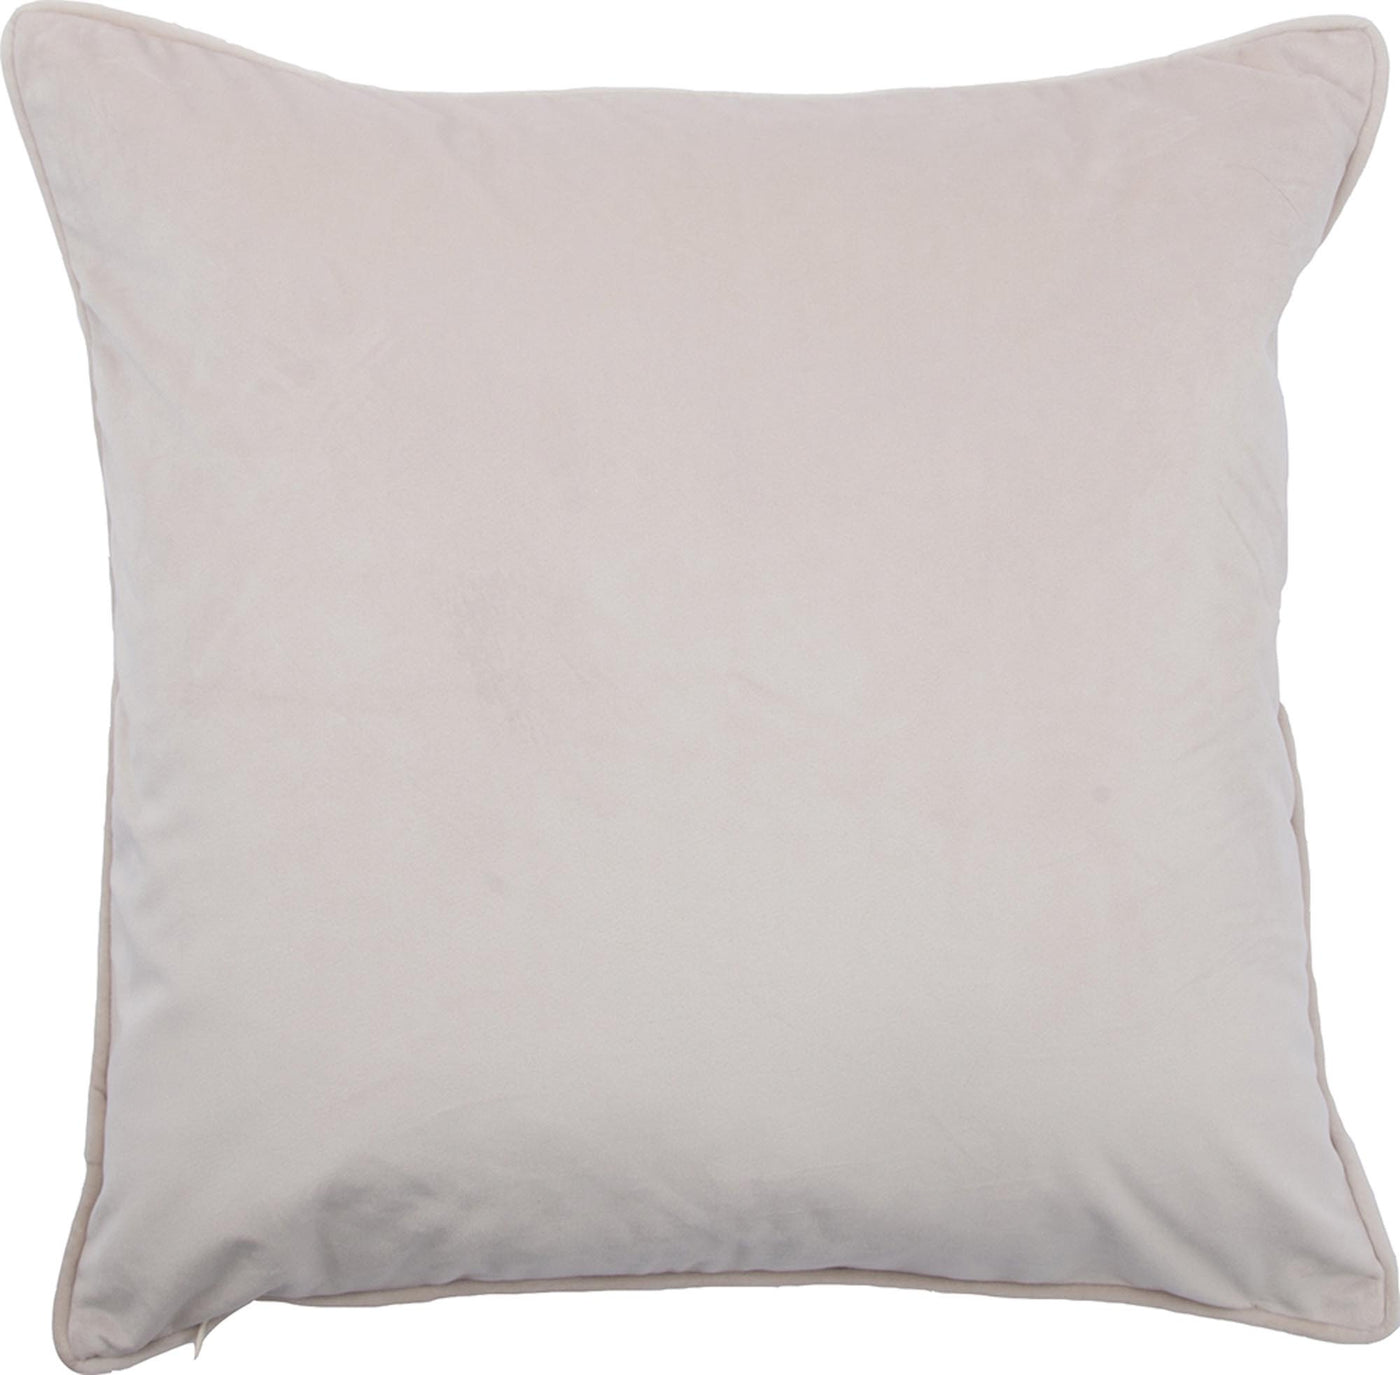 Lagos Pillow